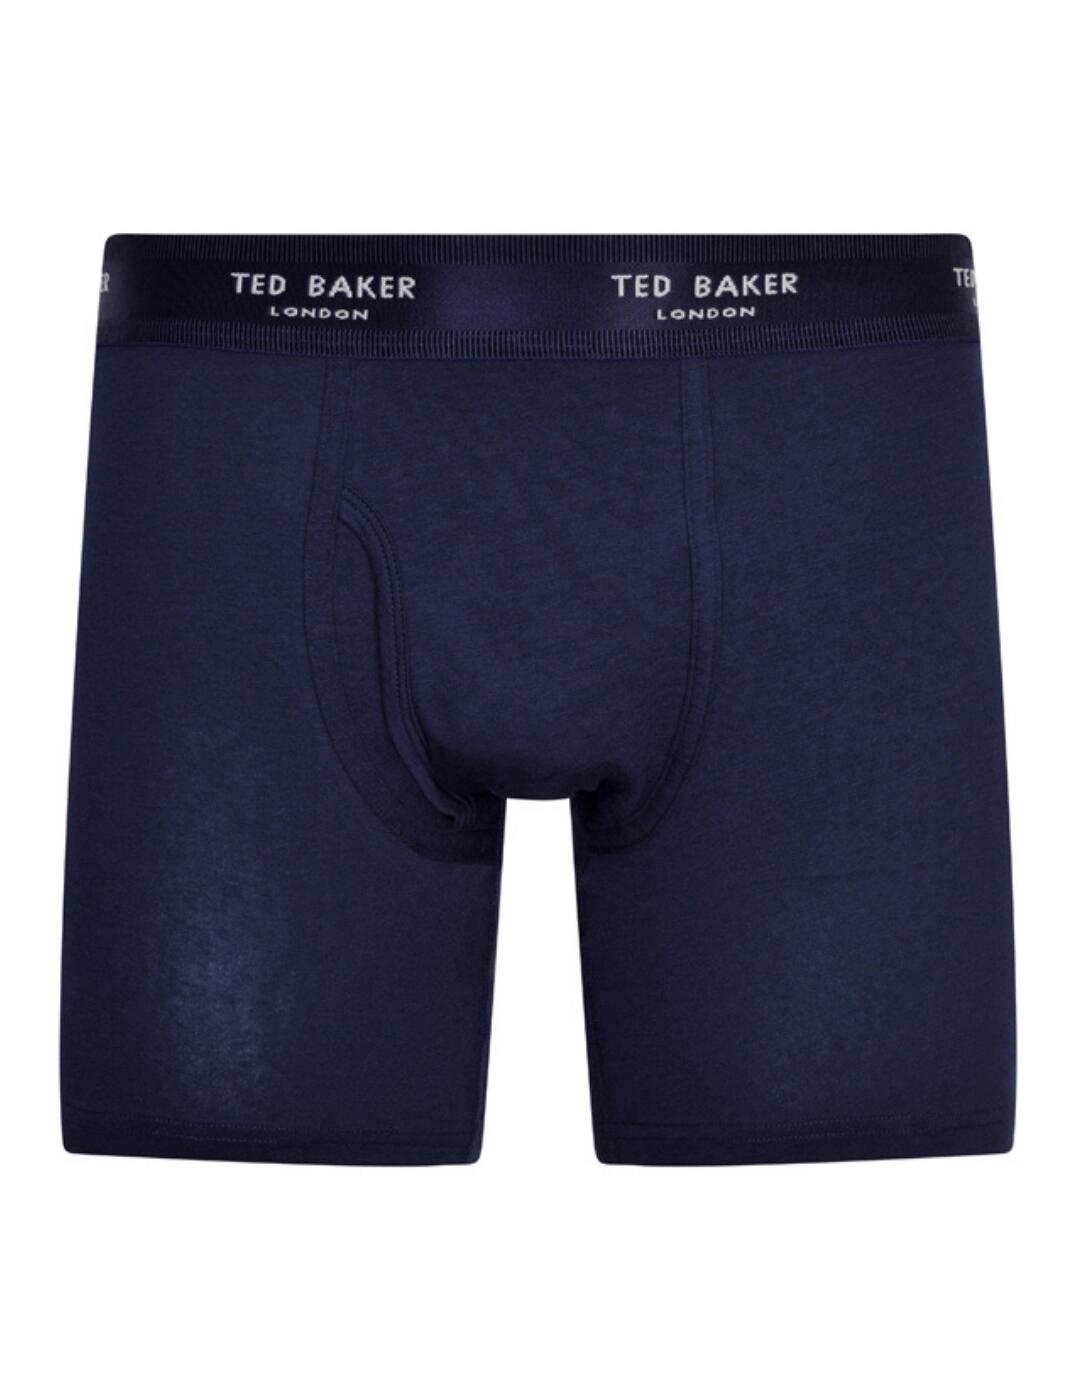 Ted Baker Men's Boxer Briefs 3 Pack - Belle Lingerie | Ted Baker Men's ...